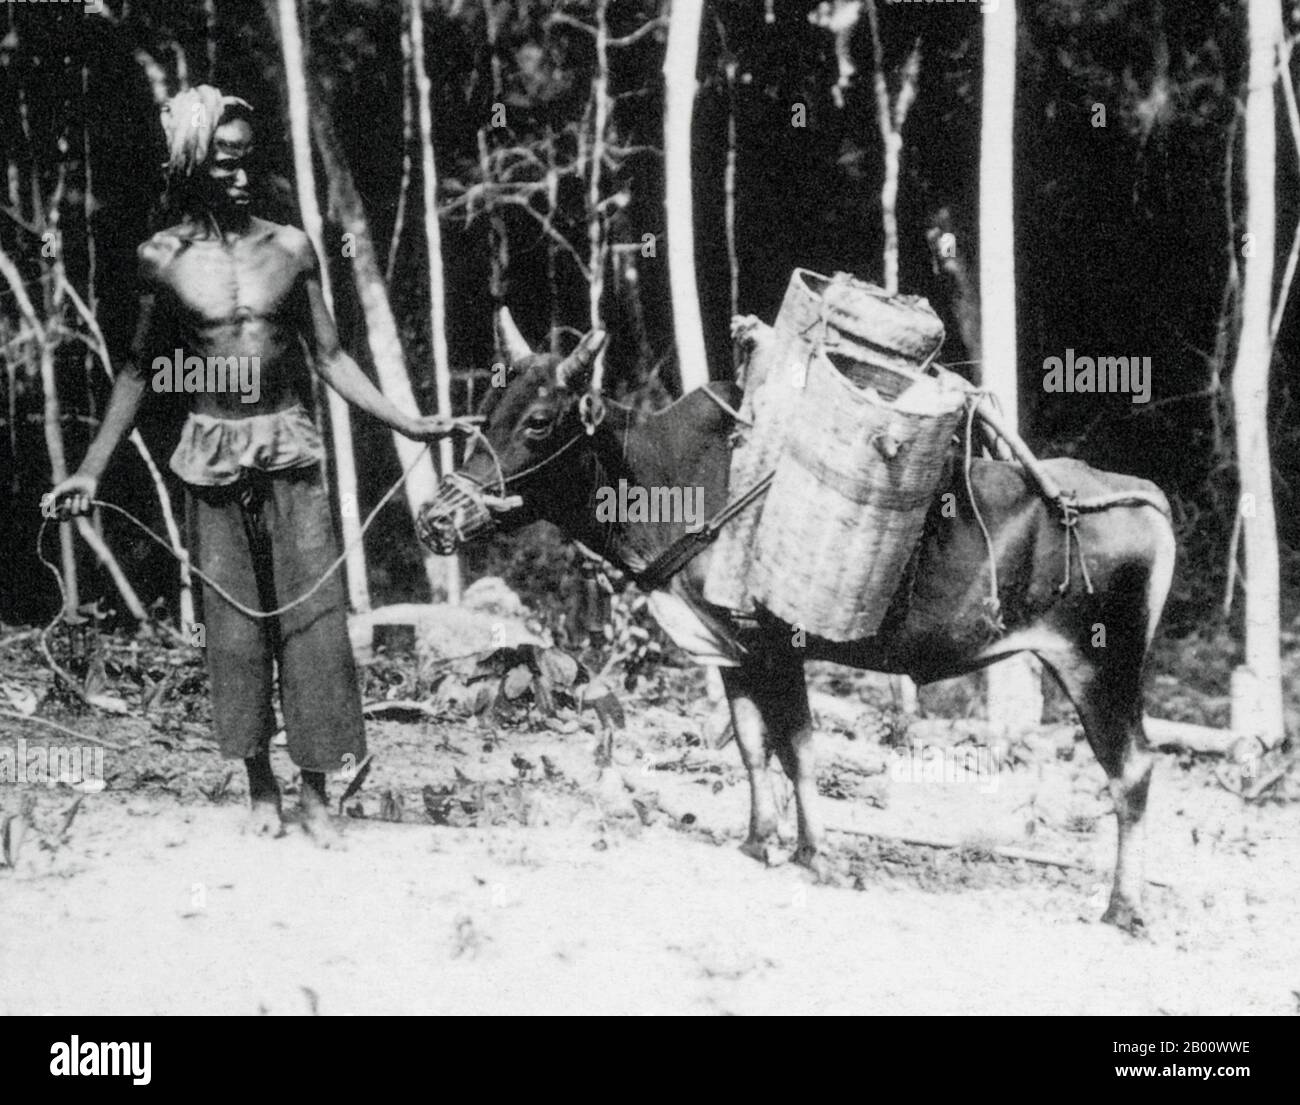 Thailandia: Un agricoltore con il suo bue a Chiang Saen, nel nord del Siam, 1902. I buoi Pack erano il mezzo di trasporto principale all'epoca e agevolavano gli scambi commerciali intorno al Laos, alla Cina meridionale, al Vietnam, alla Cambogia, alla Thailandia e alla Birmania. Ciascuno dei cestelli sulle selle può trasportare 20 kg di risone. Foto Stock